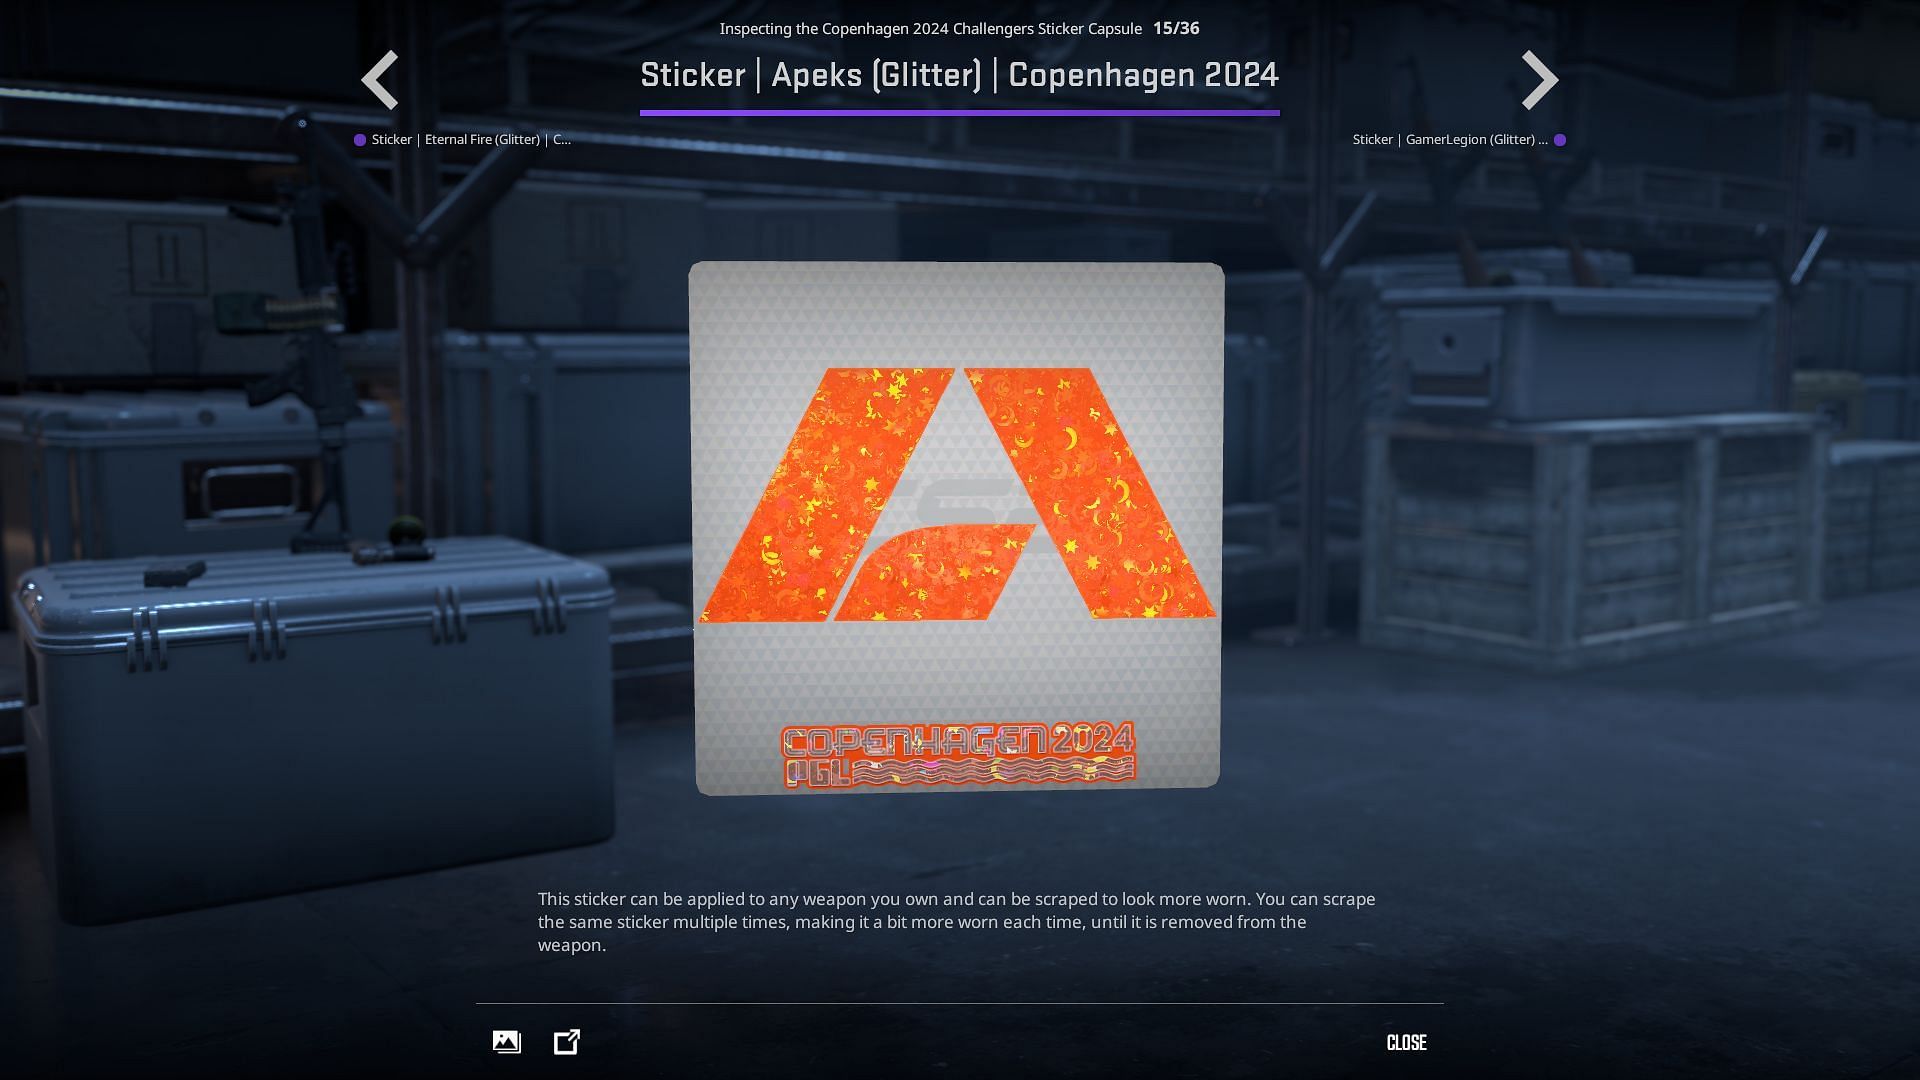 APEKS Glitter sticker (Image via Valve)